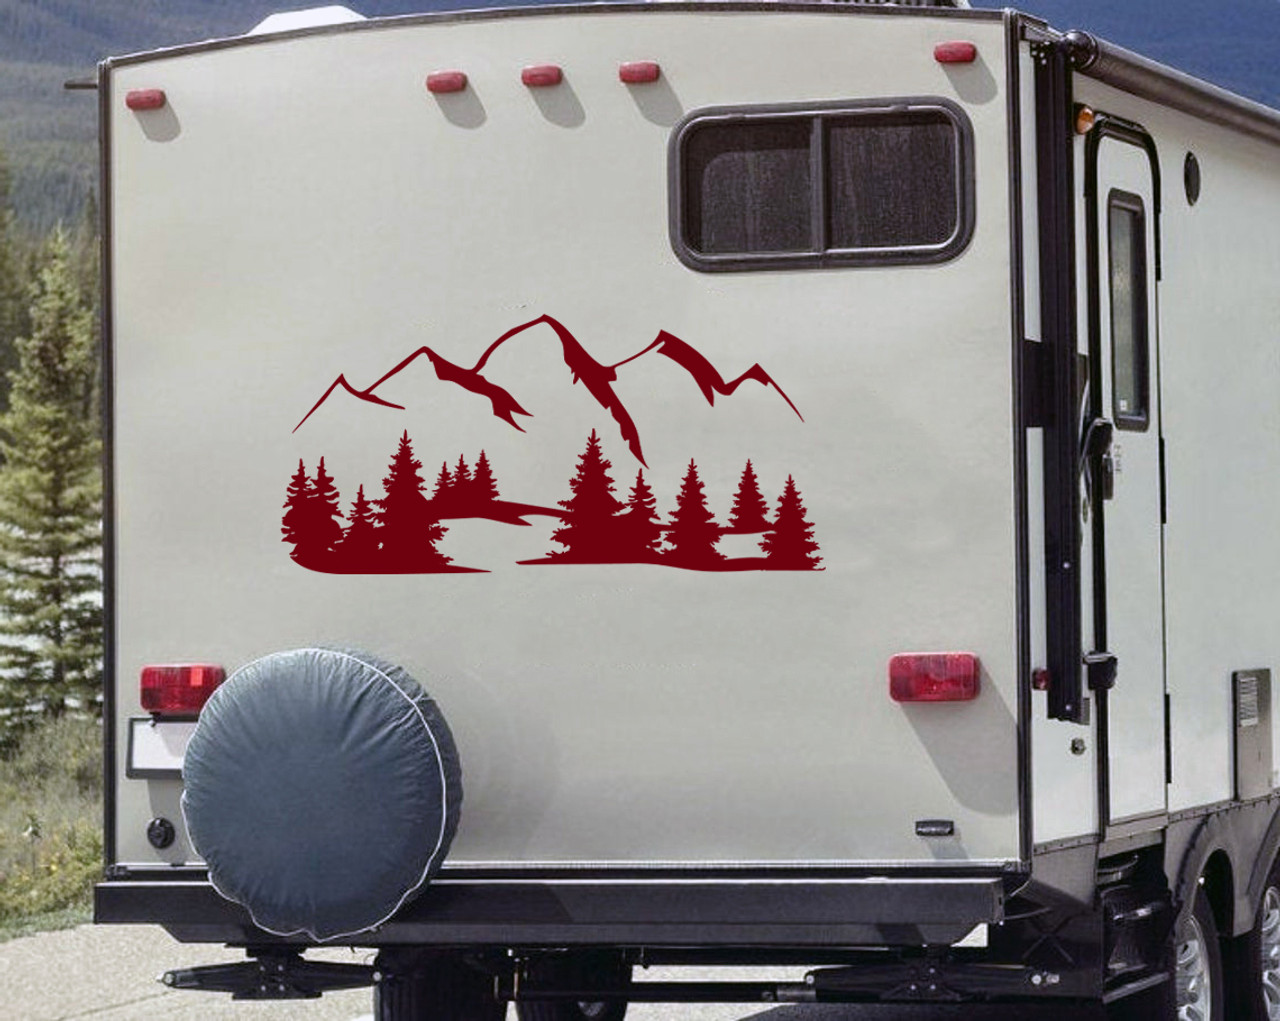 Mountains Forest Scene Vinyl Decal V16 - RV Travel Trailer Graphics - Die Cut Sticker
